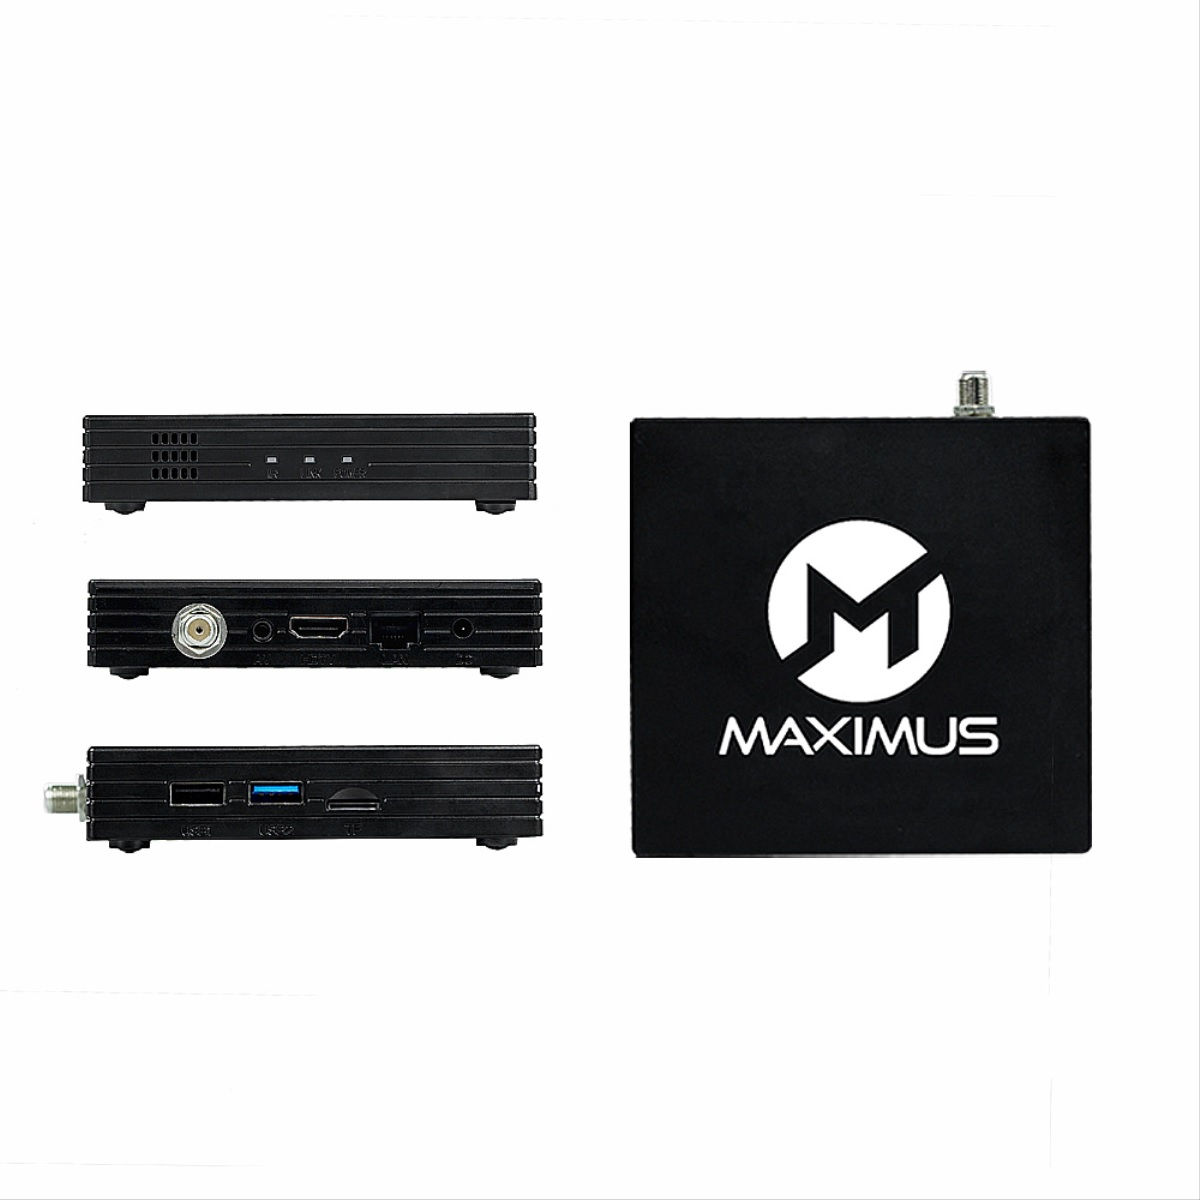 MAXIMUS 5.0 mit DVB-S2, HD Receiver Fernbedienung und Schwarz) Box Sat-Receiver TV - Wlan HDMI (PVR-Funktion